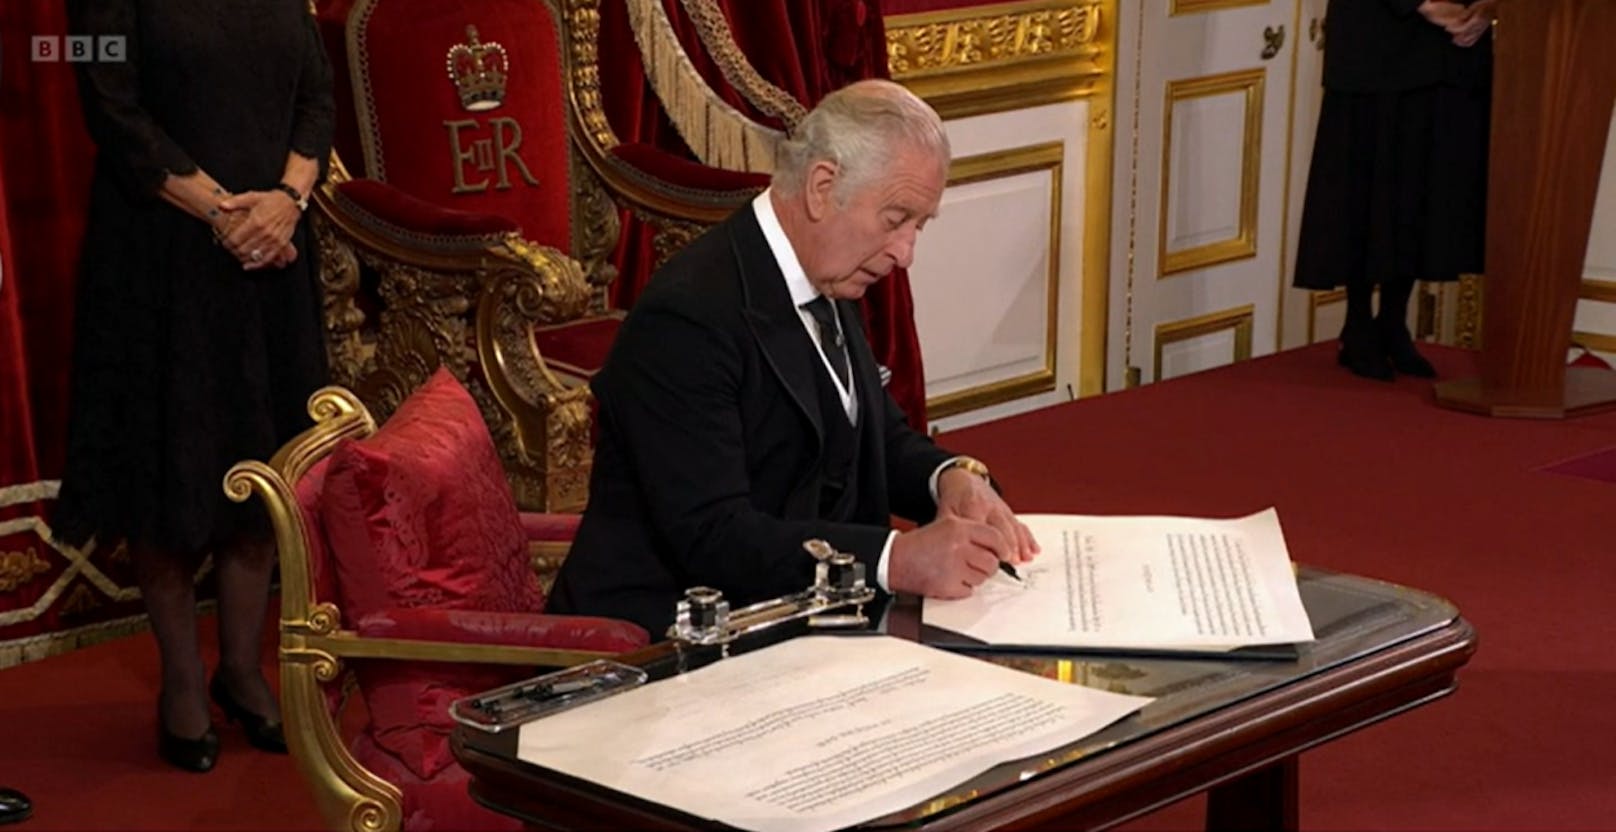 Danach unterschreibt der britische Monarch die Proklamation.